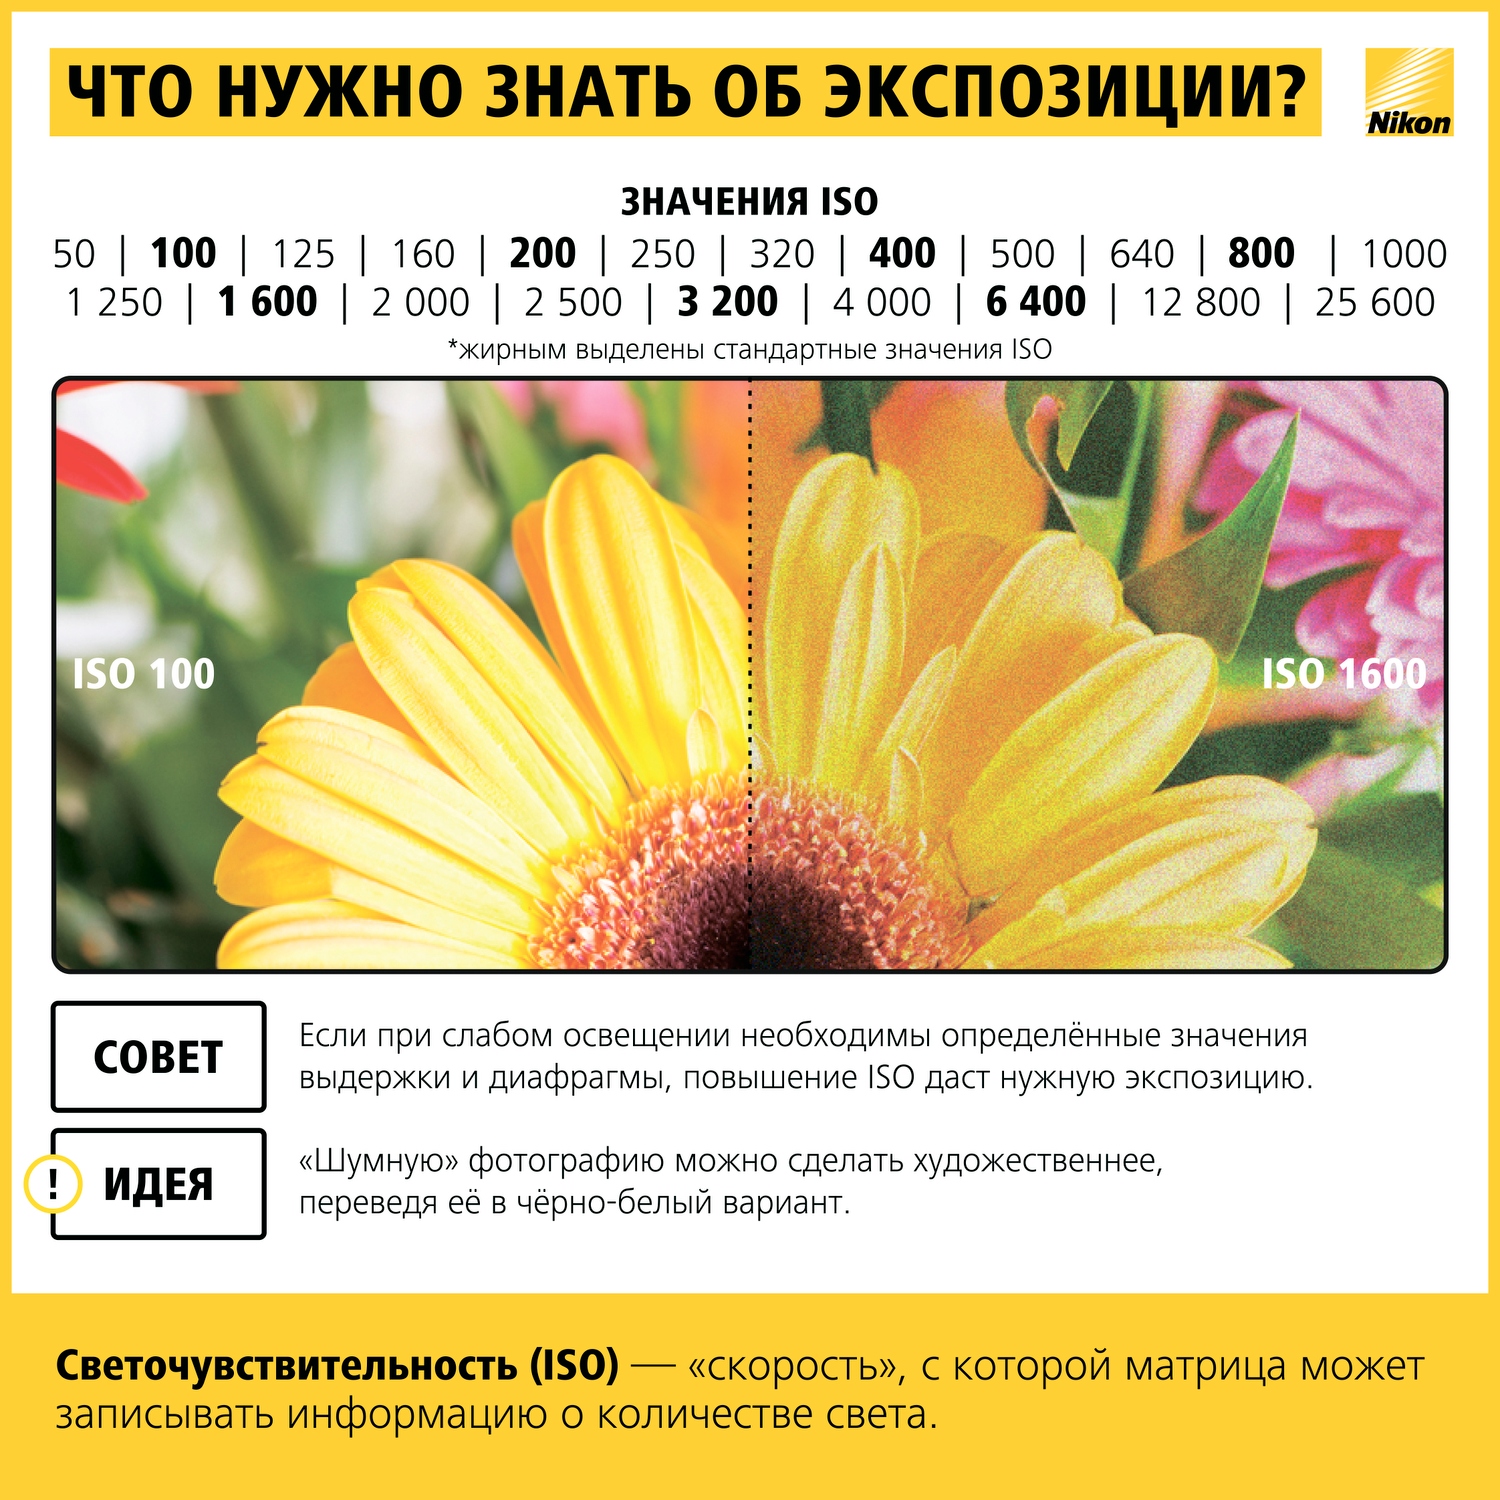 Как научиться фотографировать: пошаговая инструкция от Nikon Info_nikon_07